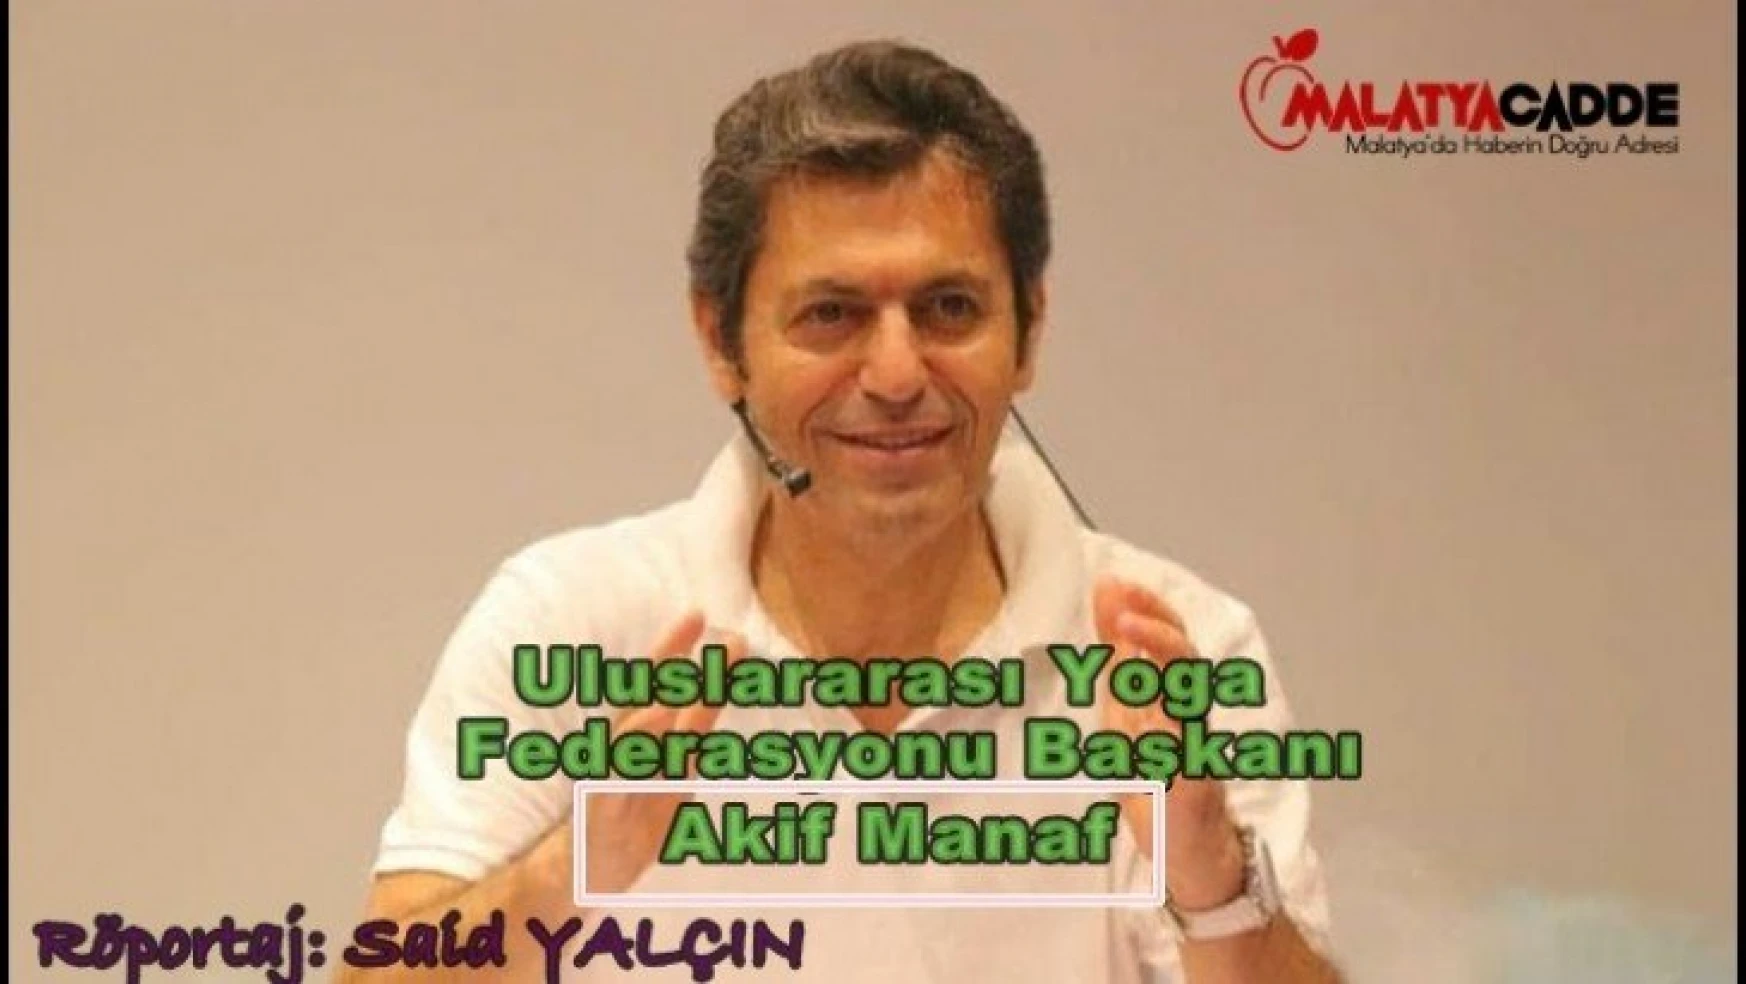 Uluslararası Yoga Federasyonu Başkanı  Akif Manaf İle Söyleşi